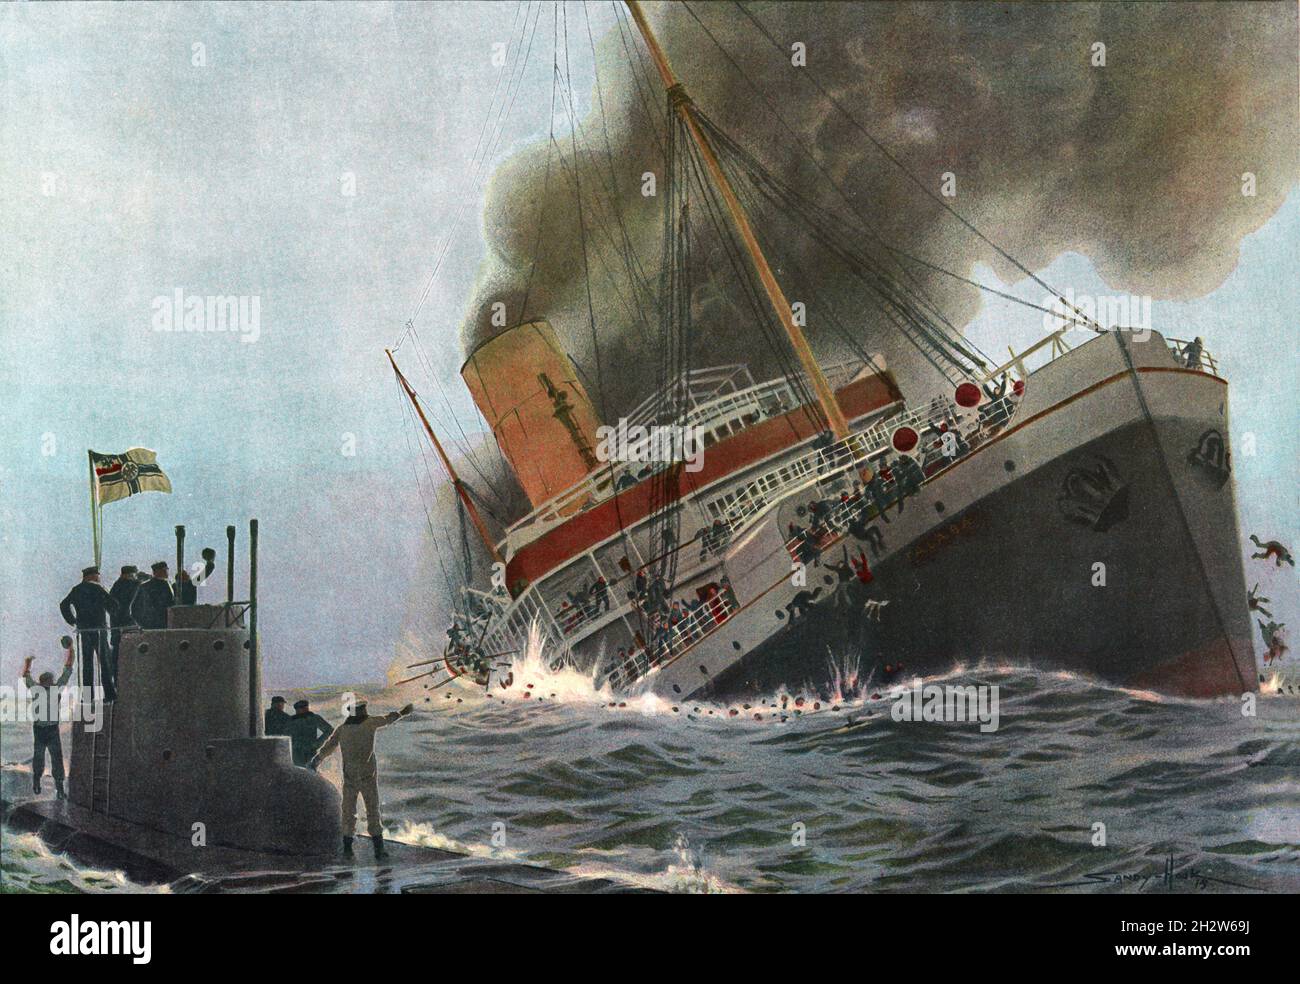 Ein Vintage-Gemälde aus dem Jahr 1915, in dem der britische Ozeandampfer RMS Falaba nach einer Torpedotorpedierung im St. George's Channel am 28. März 1915 durch das deutsche U-Boot U-28 mit dem Verlust von 104 Menschenleben dargestellt wird. Es wurde als Thrasher-Vorfall bekannt, nachdem ein amerikanischer Passagier, Leon Chester Thrasher, ein 31-jähriger Bergbauingenieur aus Massachusetts, starb, was zu einem öffentlichen Aufschrei führte, der die Vereinigten Staaten aufforderte, Deutschland den Krieg zu erklären Stockfoto